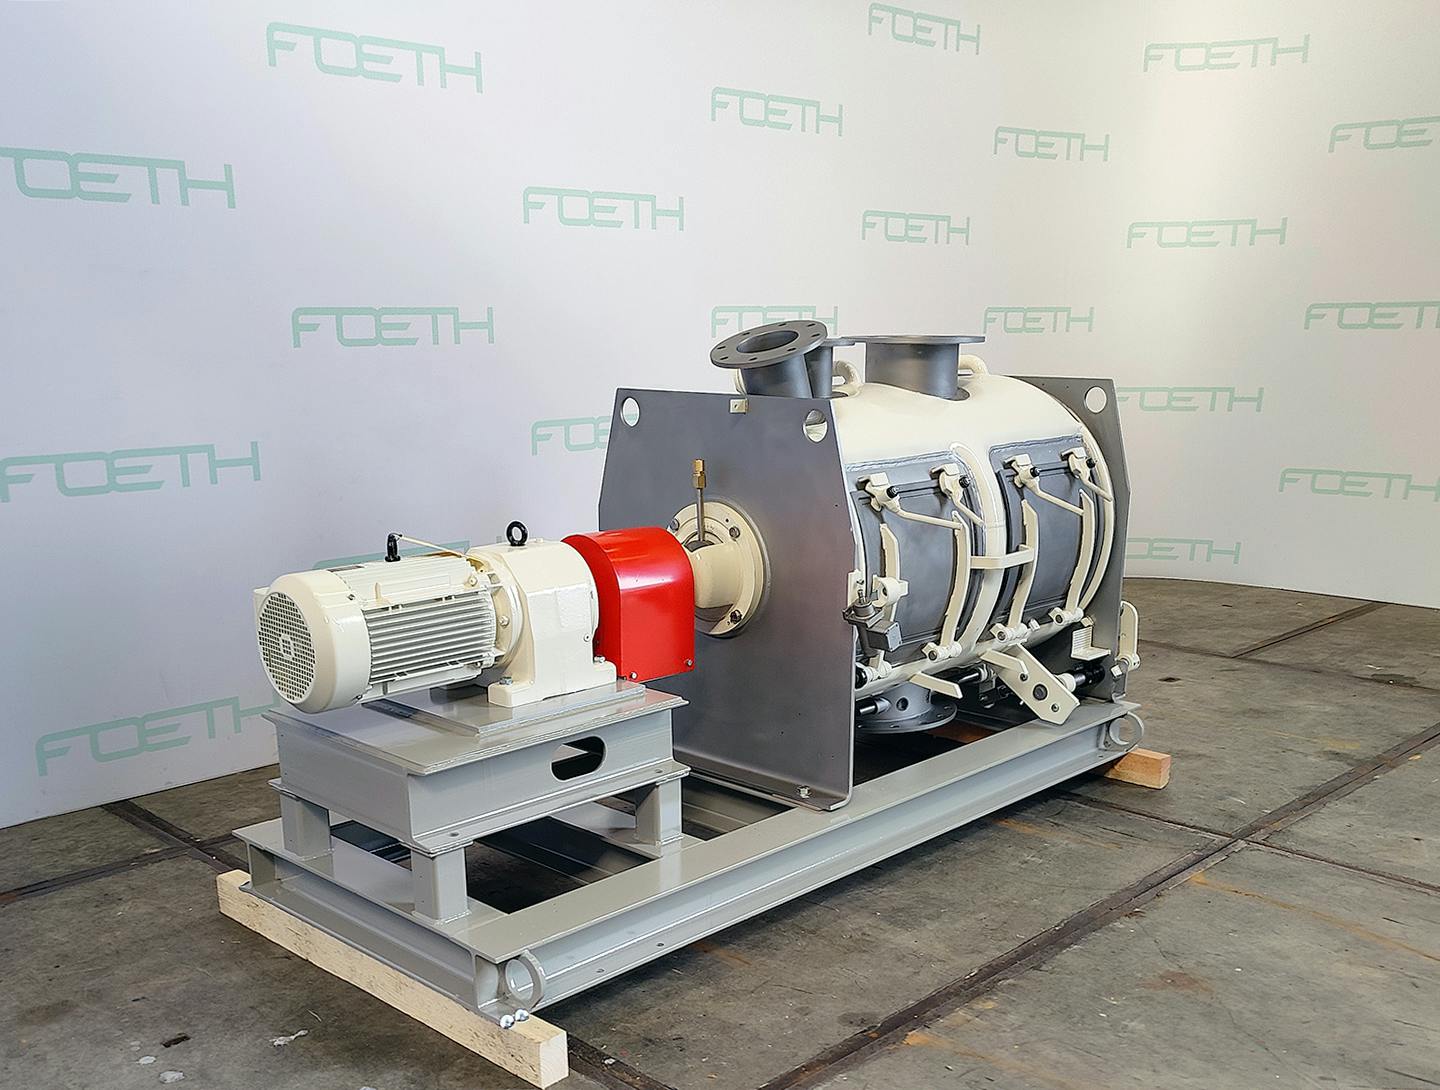 Loedige FKM-600 D - Misturador turbo para pós - image 2